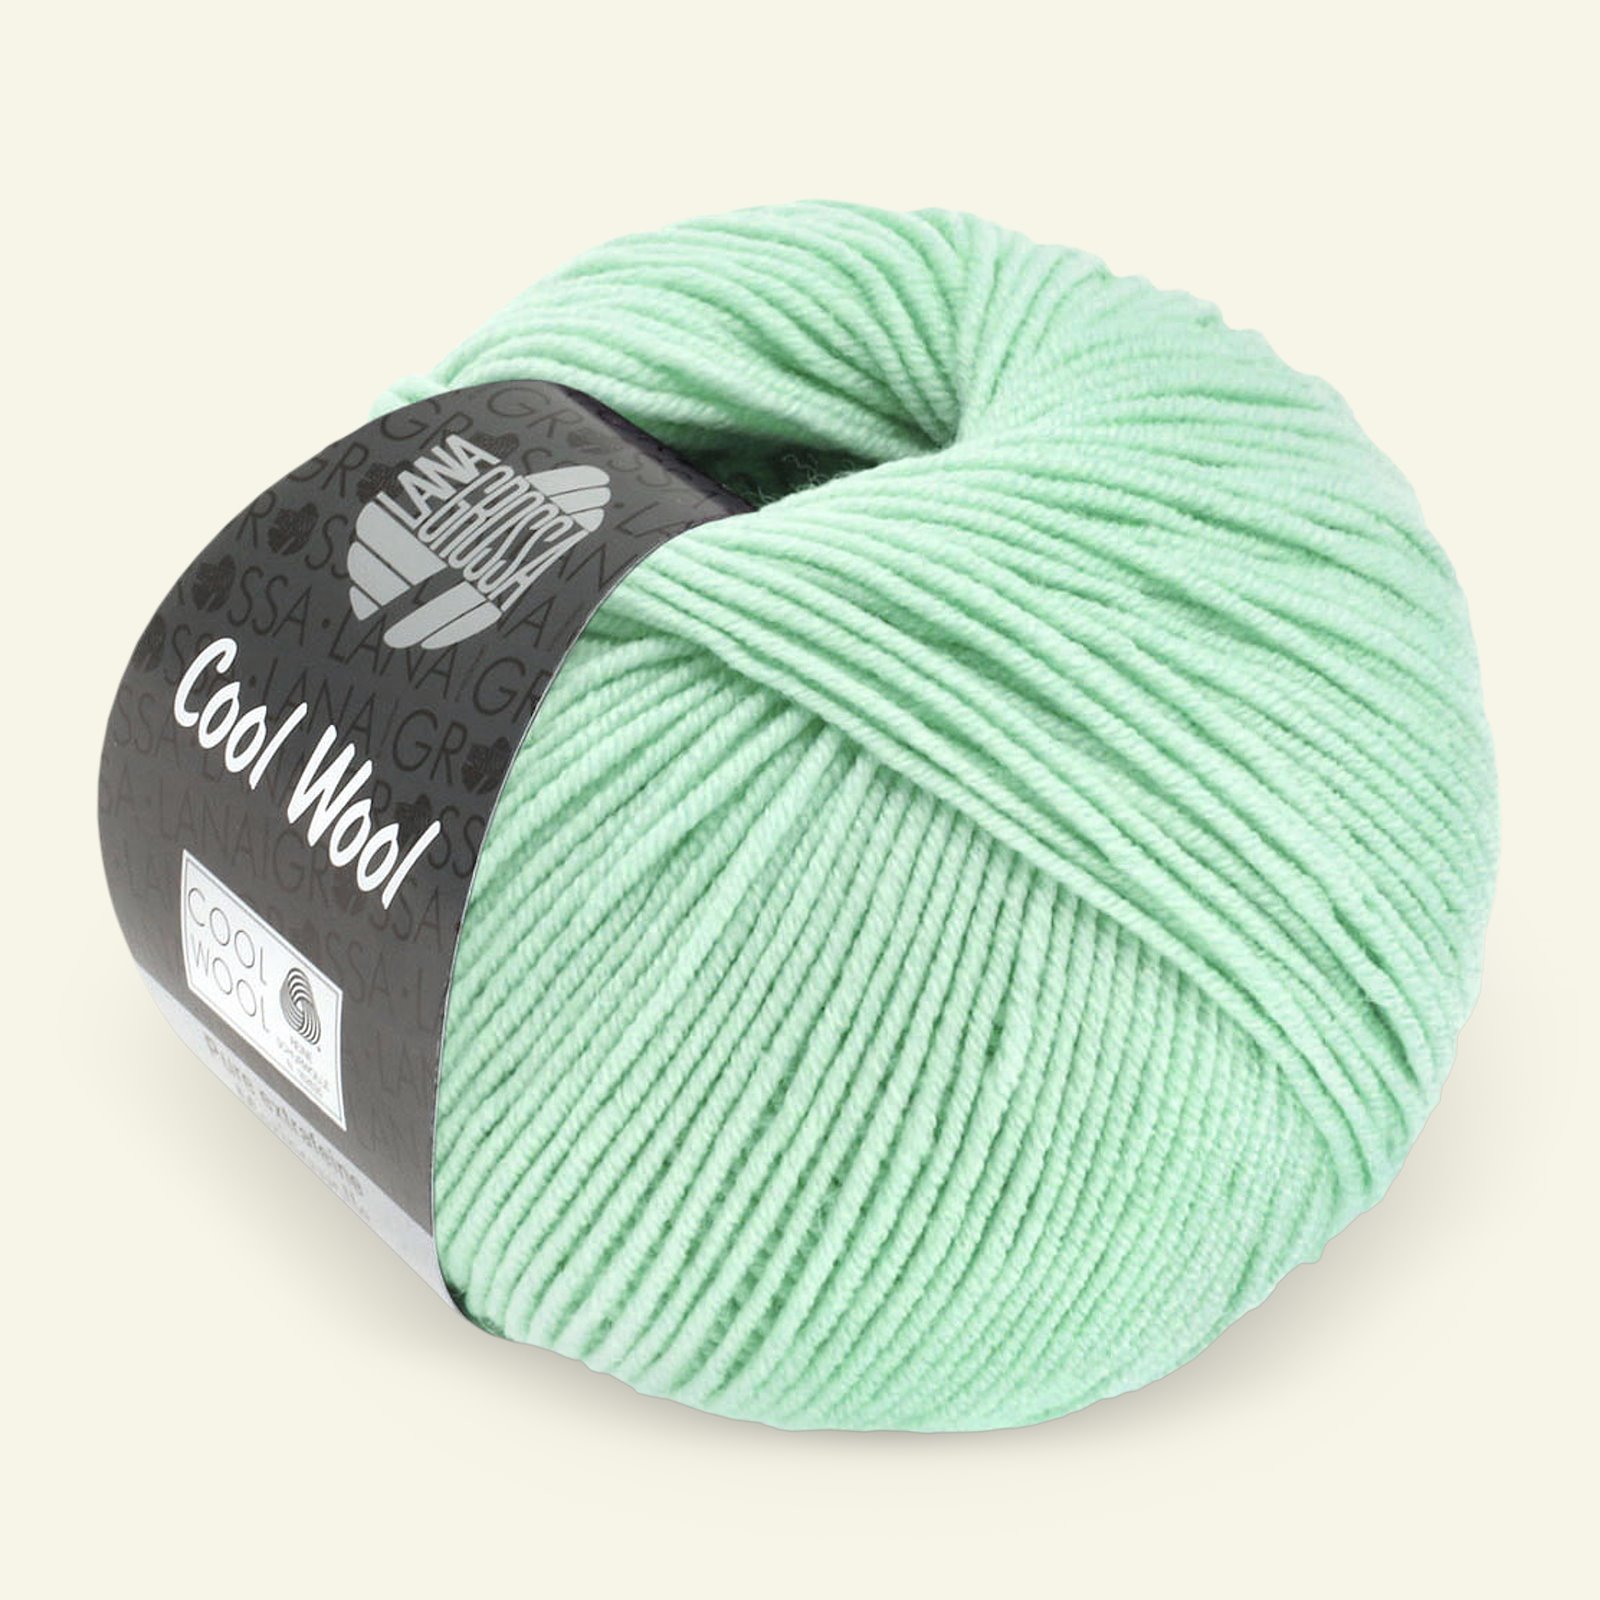 Lana Grossa, Extra feine Merinowolle Garn "Cool Wool", Pastelltürkis 90001126_pack